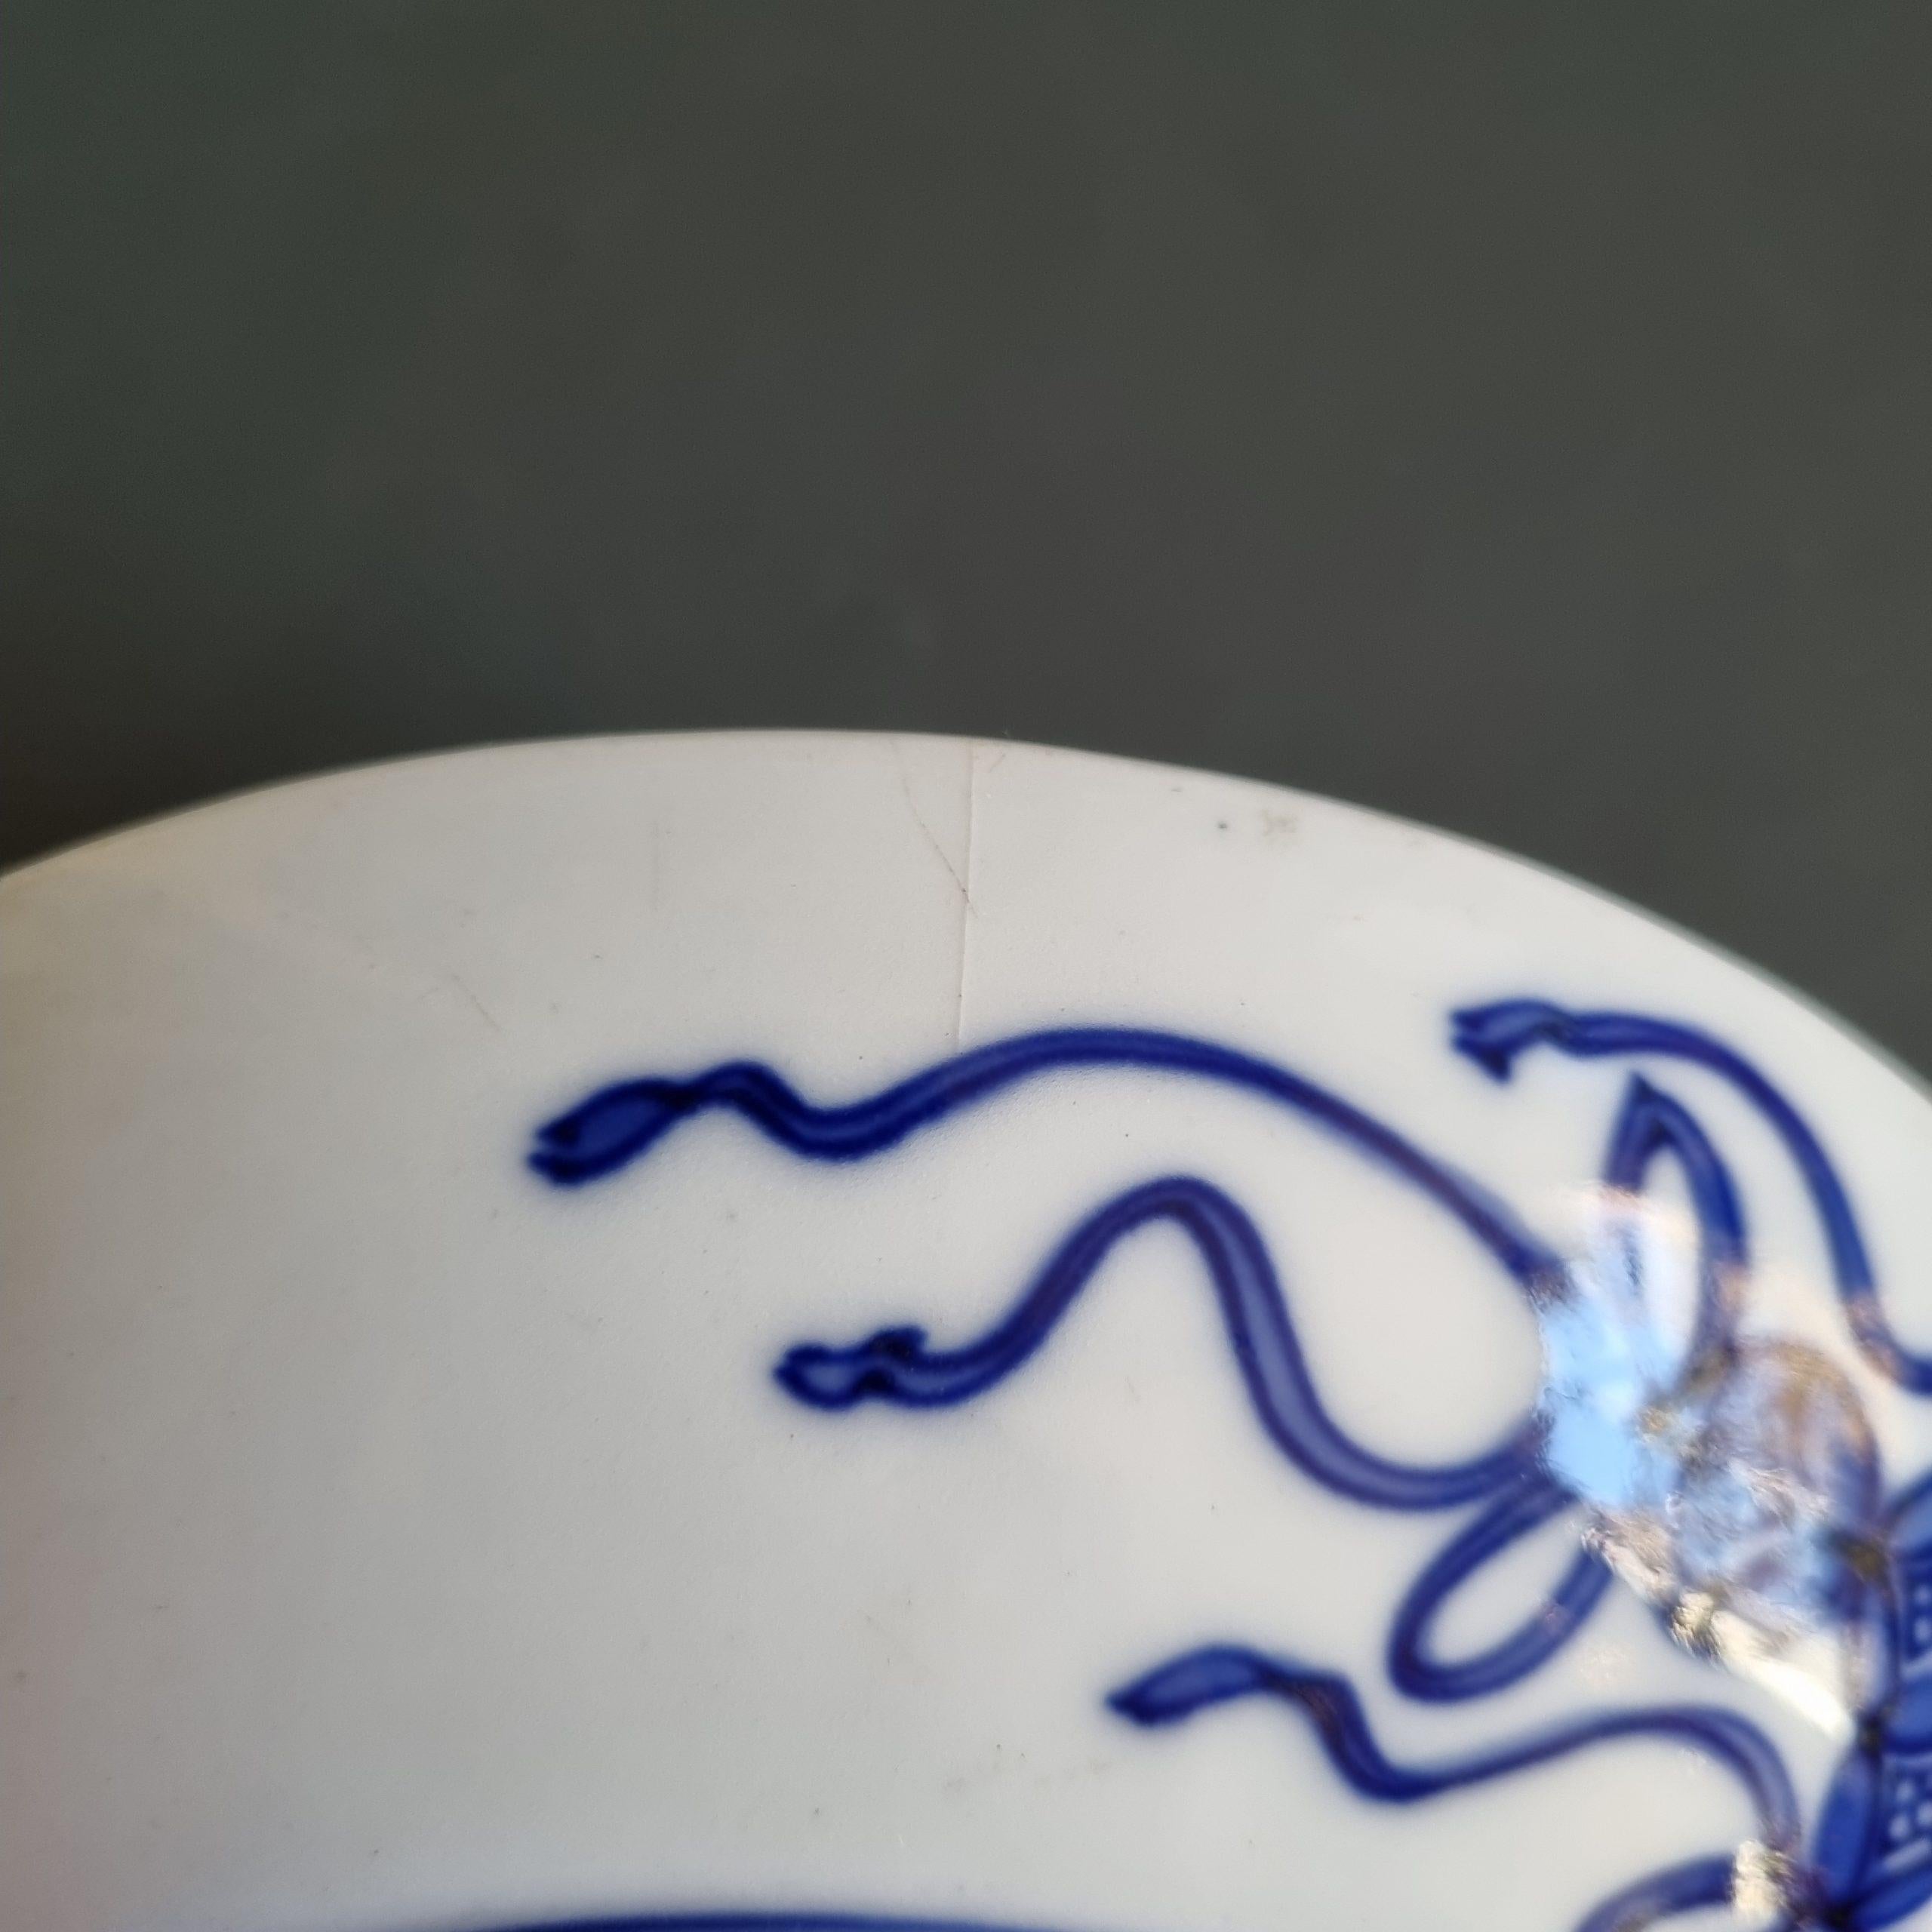 Très bel artefact avec une belle peinture

Informations complémentaires :
MATERIAL : Porcelaine et poterie
Région d'origine : Japon
Style japonais : Arita
Période : XIXe siècle Période Meiji (1867-1912)
Original/Reproduction : Original
Condit : 1